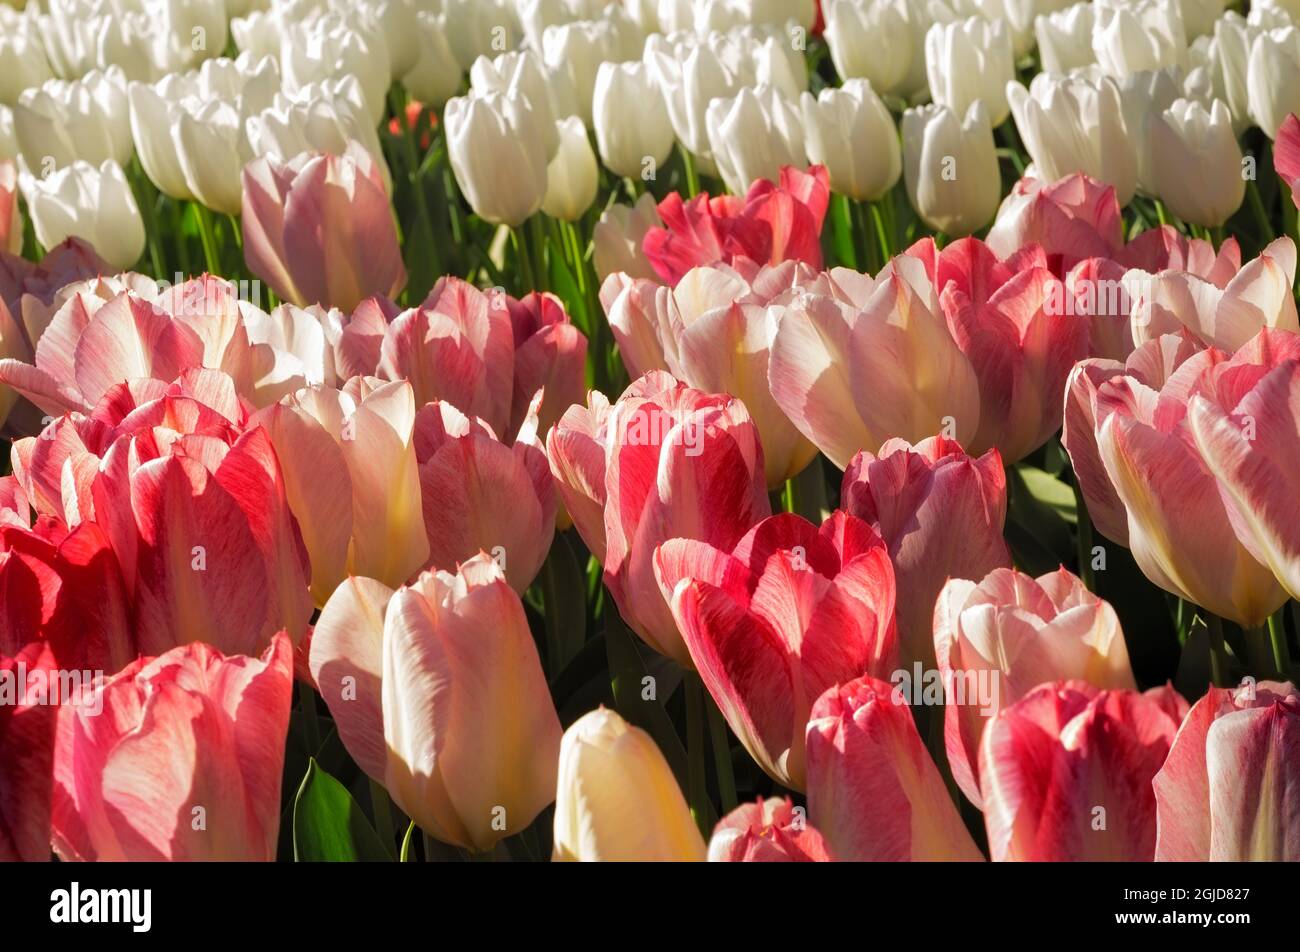 WA19618-00...WASHINGTON - des tulipes roses et blanches fleurissent dans un jardin de démonstration à la ferme des bulbes de Roozenarde. Banque D'Images